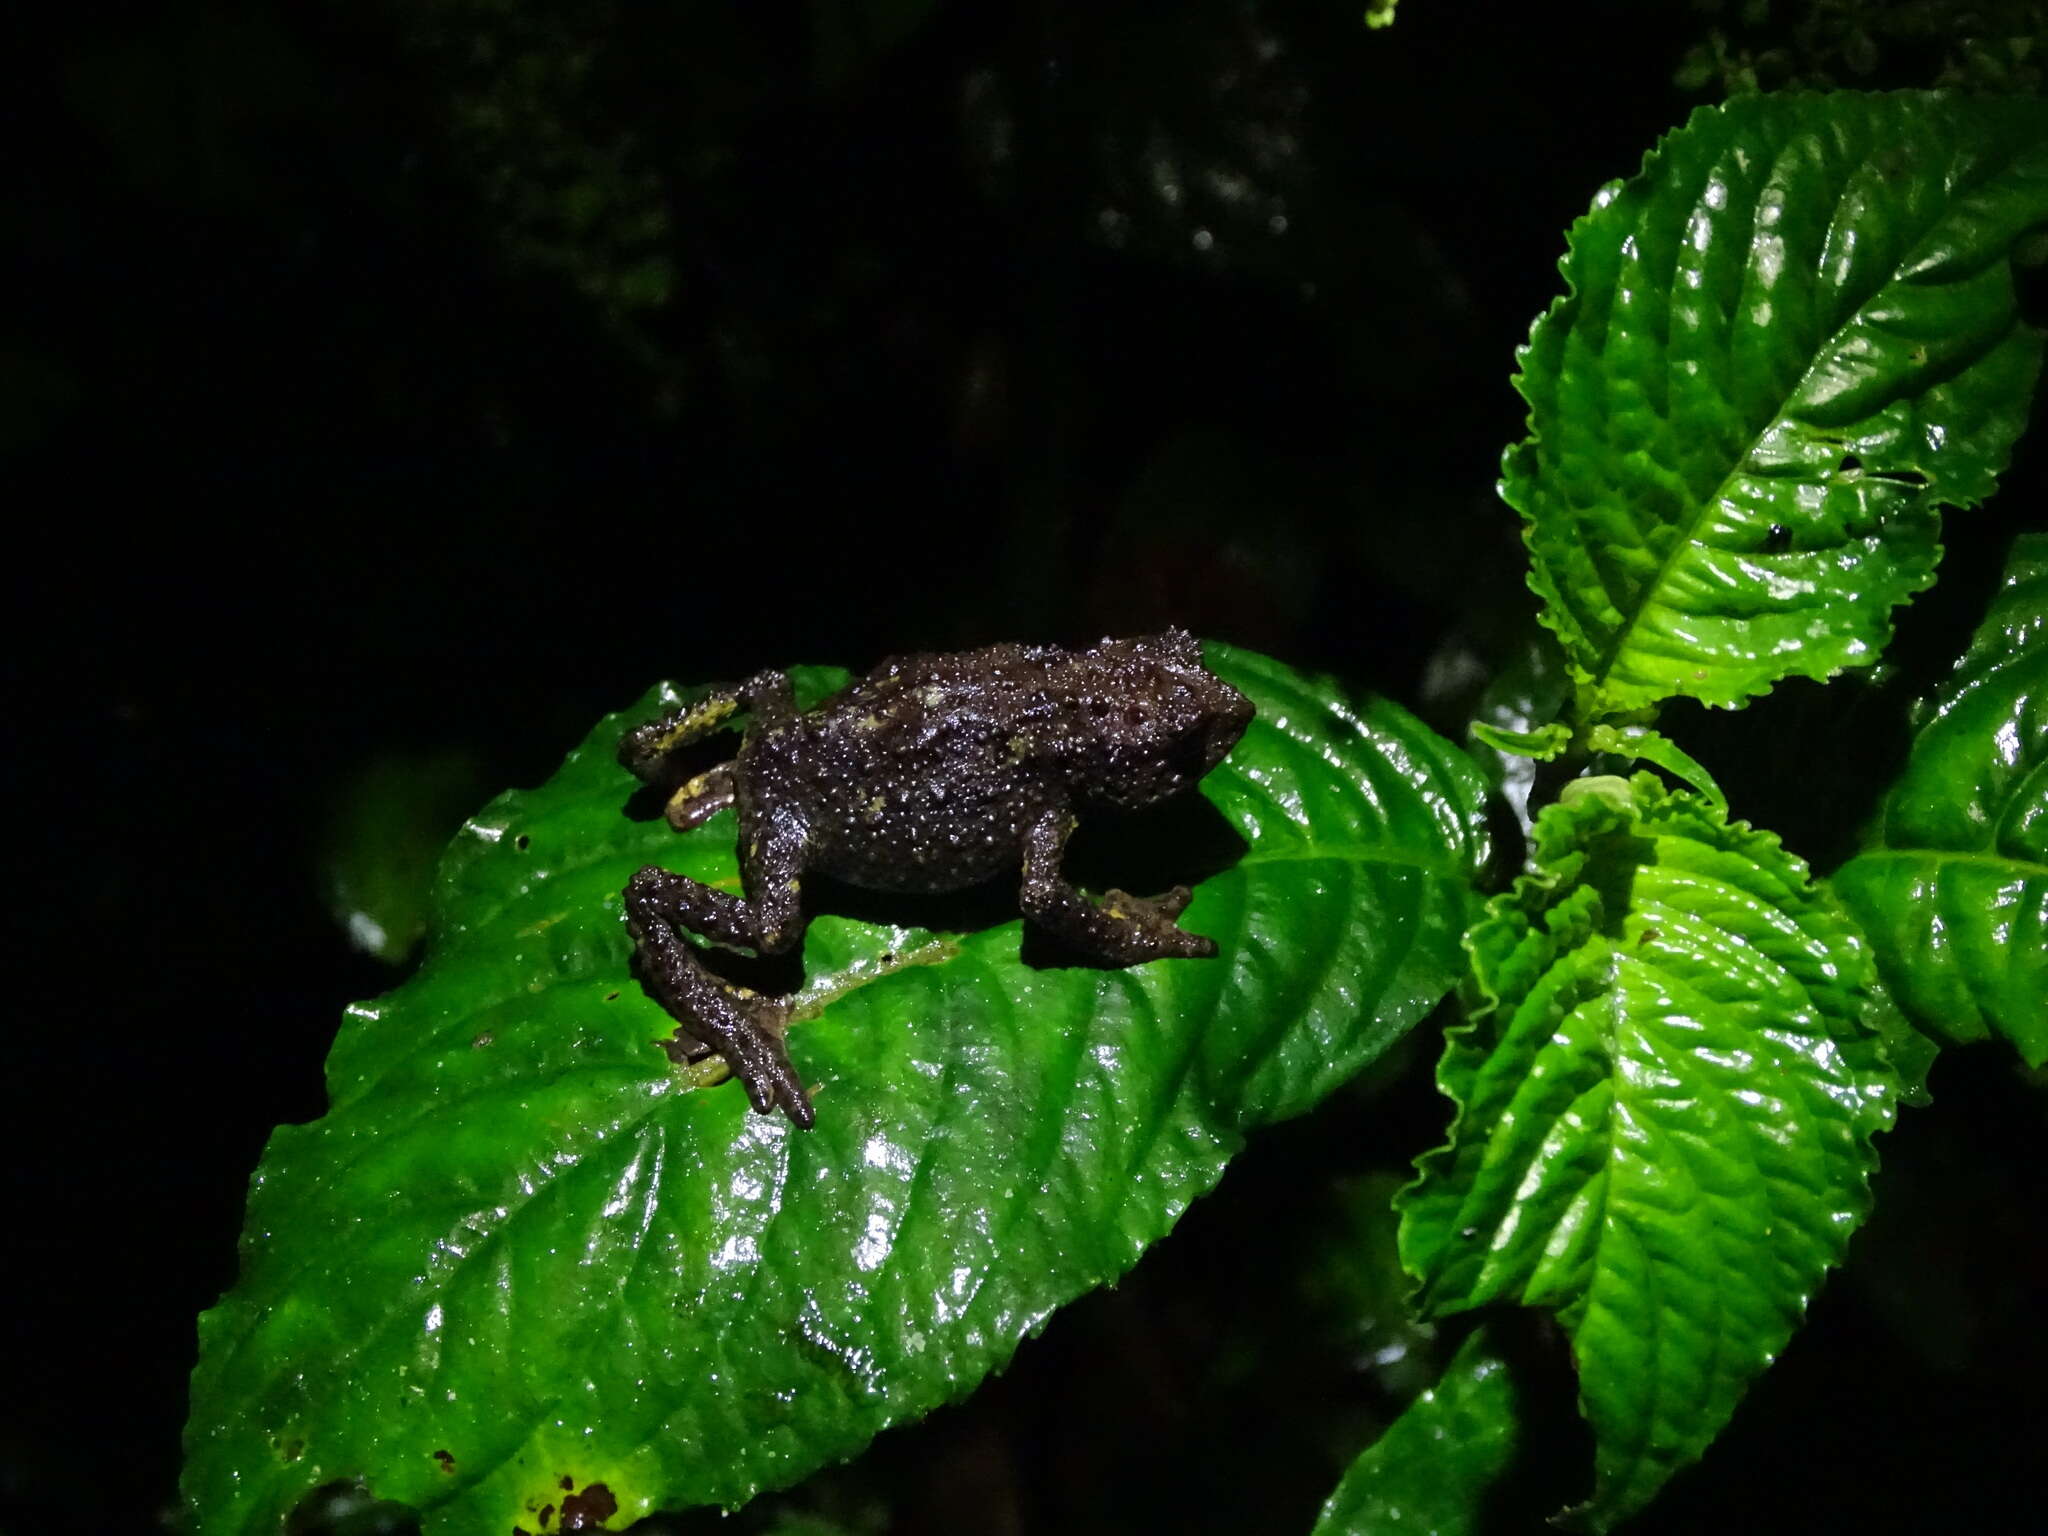 Image of Guacamayo Plump Toad